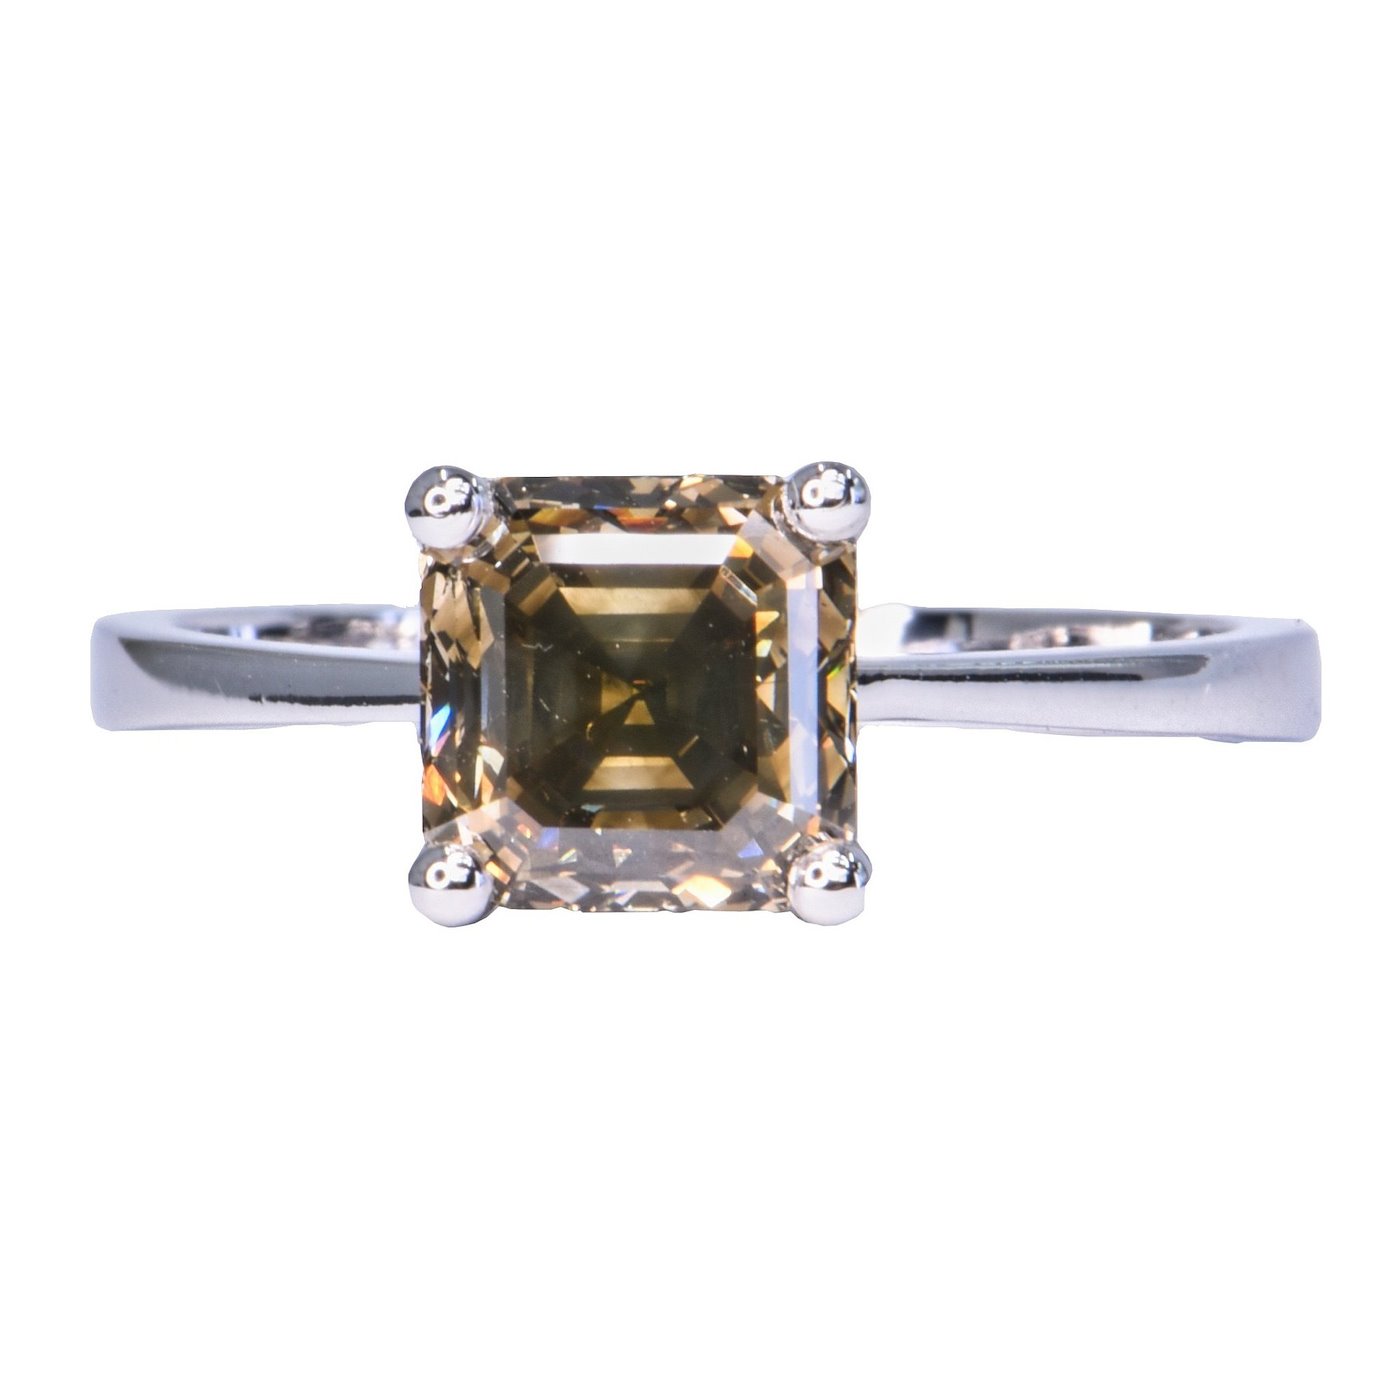 .. - Luxusní prsten s 2,24 ct Natural Fancy Dark Gray diamantem, zlato 585/1000, značeno platnou puncovní značkou "labuť", hrubá hmotnost 3,26 g